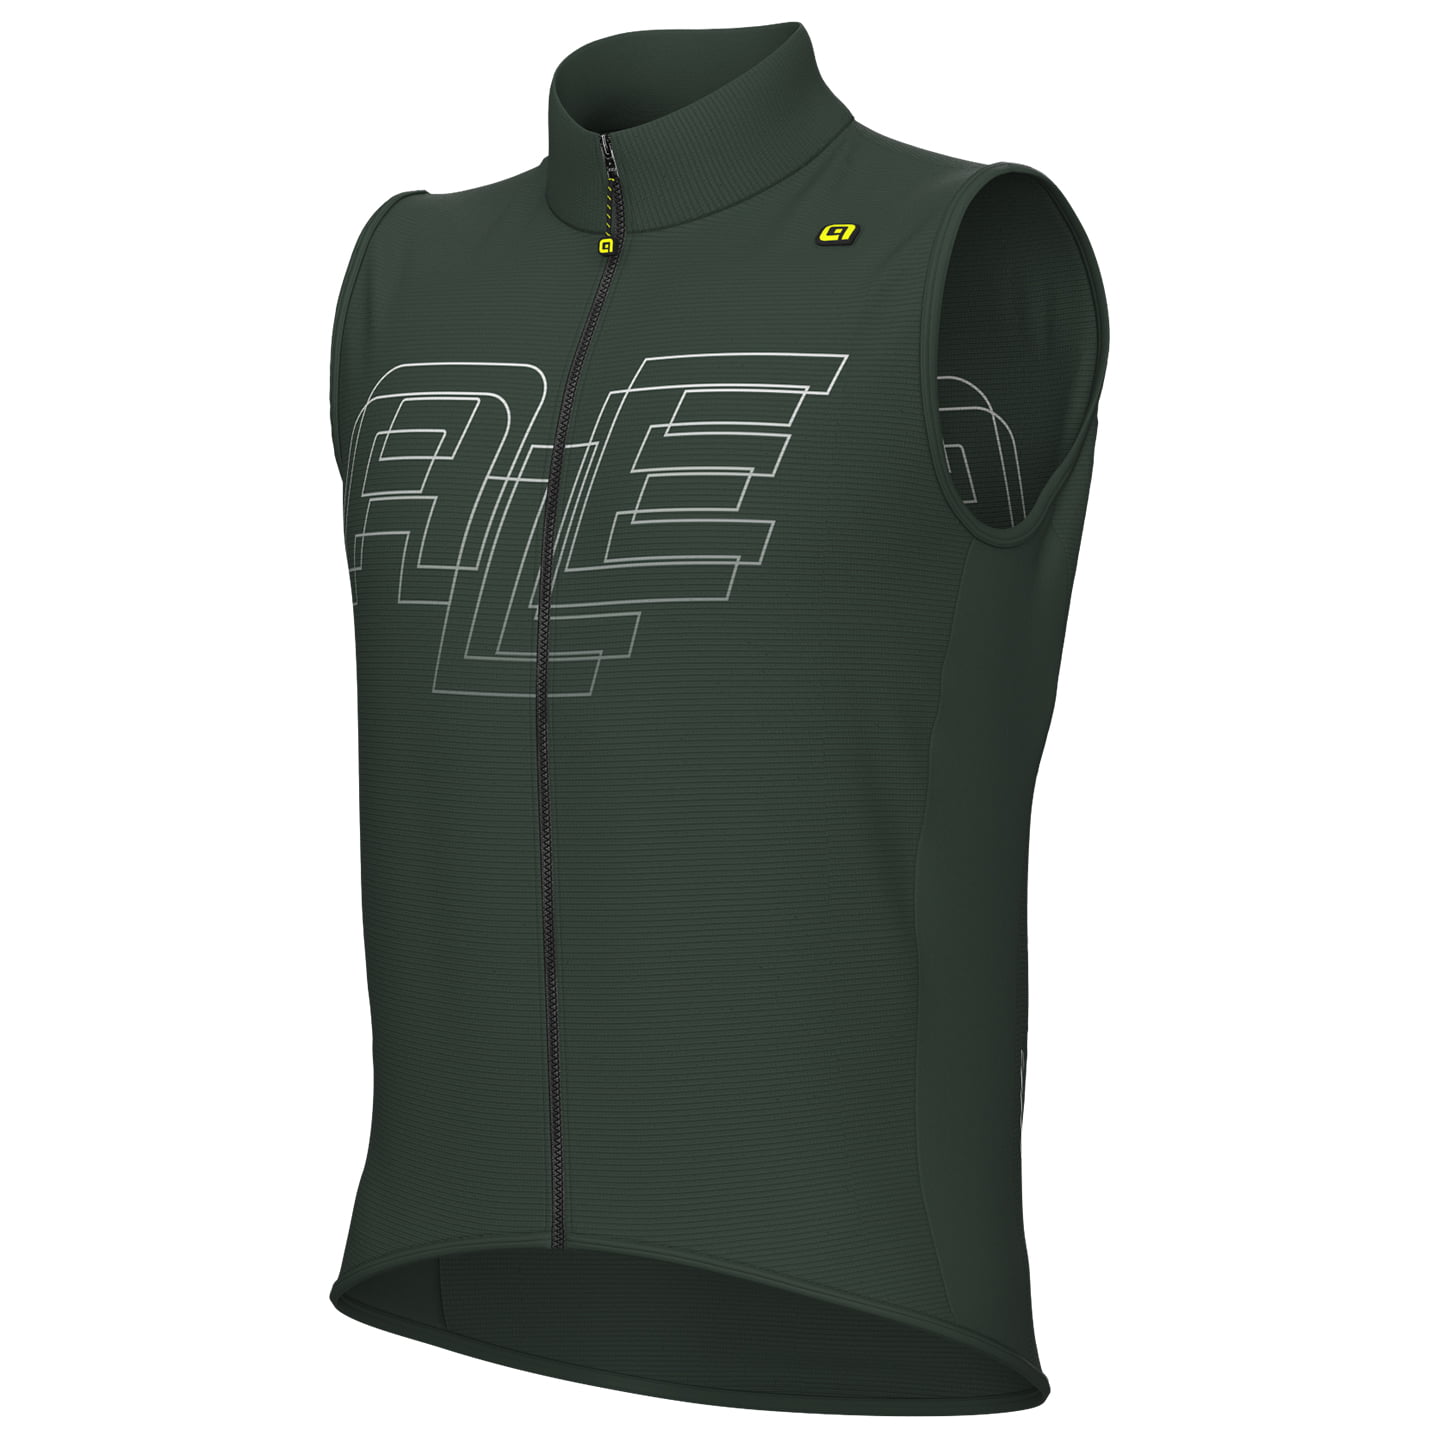 Wind Vest, for men, size 3XL, Bike vest, Cycling gear